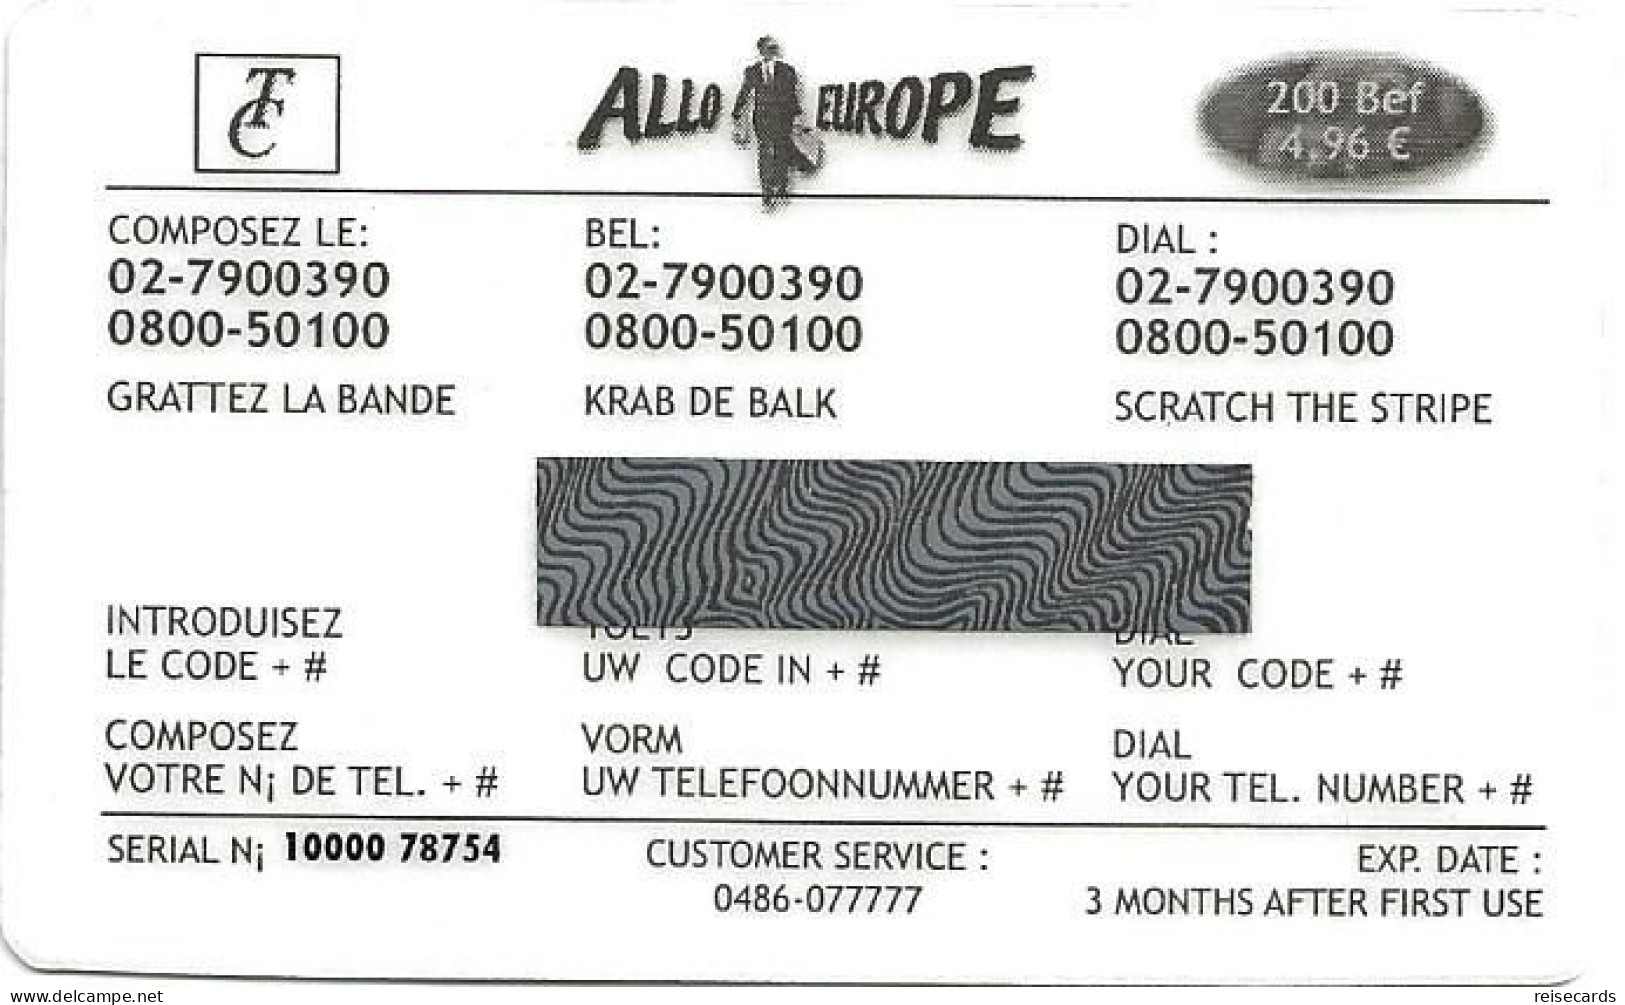 Belgium: Prepaid Allo Europe - Cartes GSM, Recharges & Prépayées